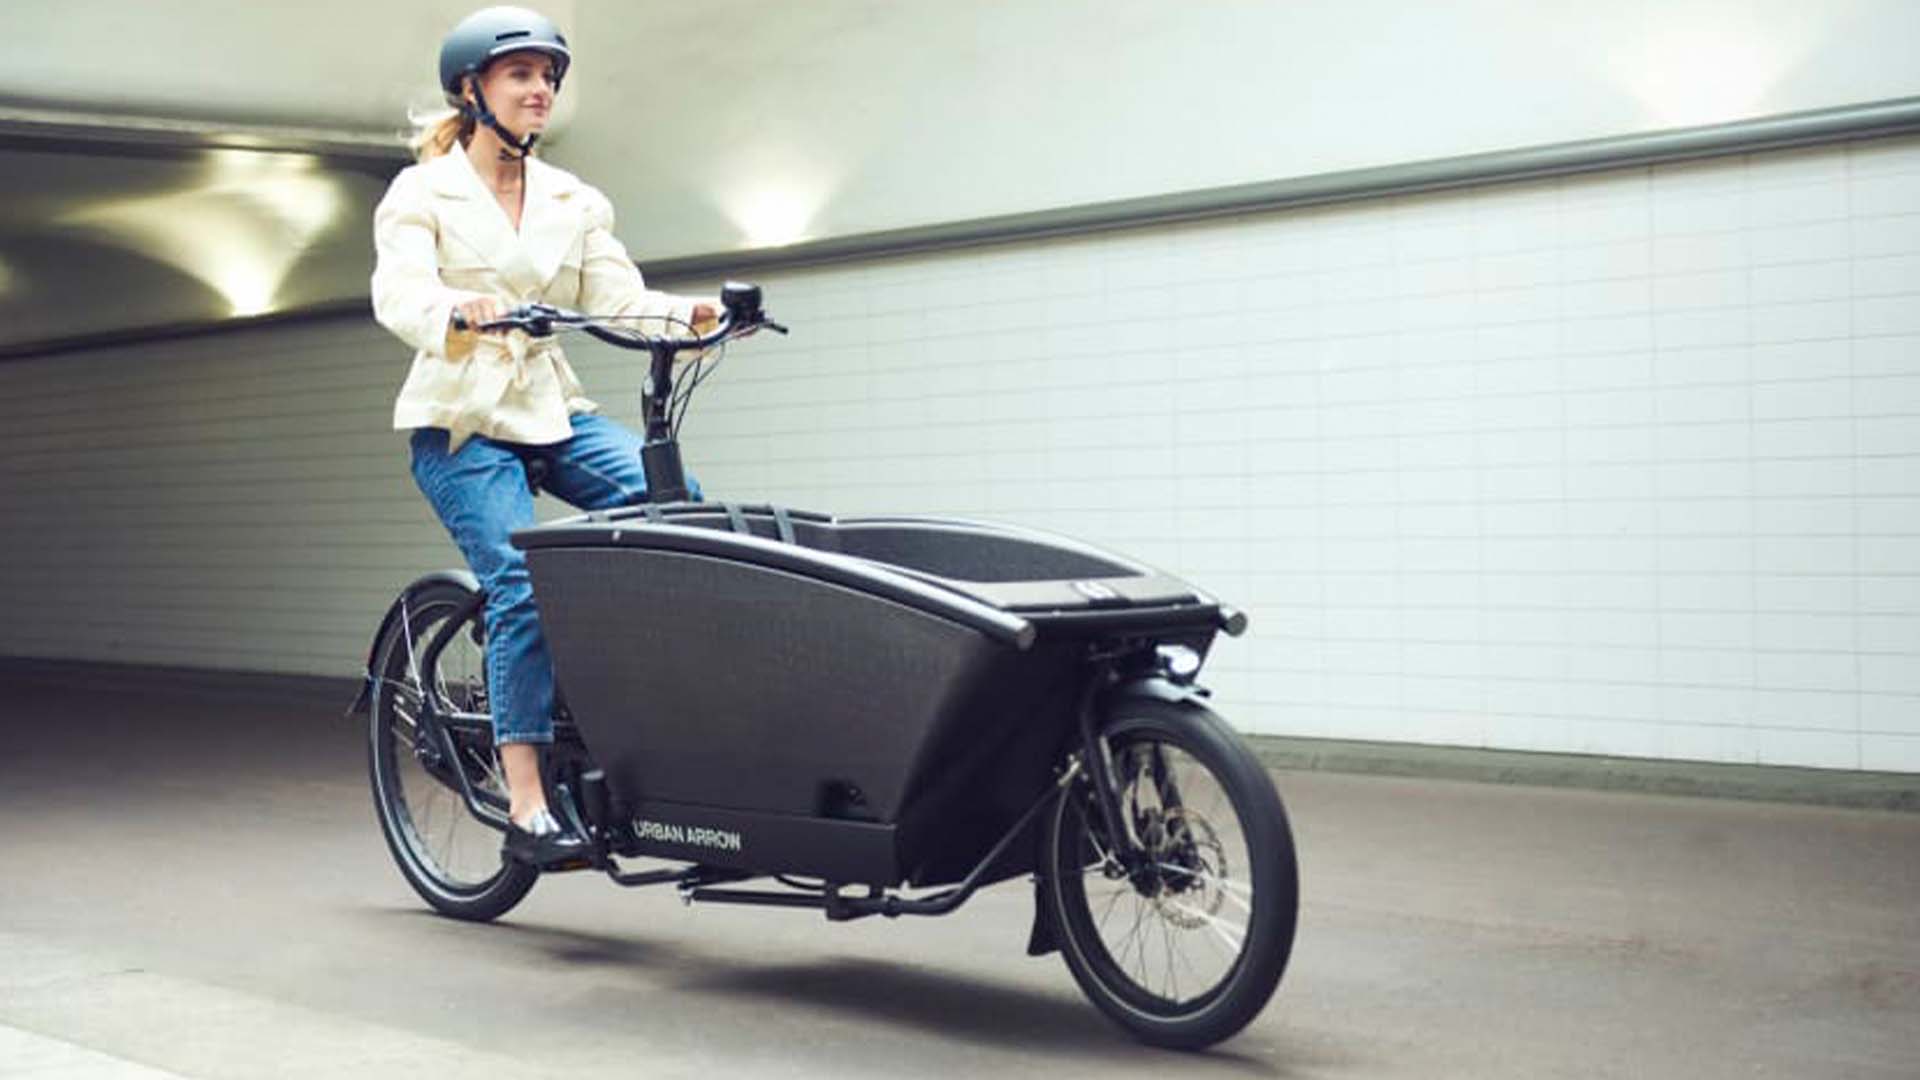 Bike Totaal Krimpen - Urban Arrow - Cargobike - van - het - jaar